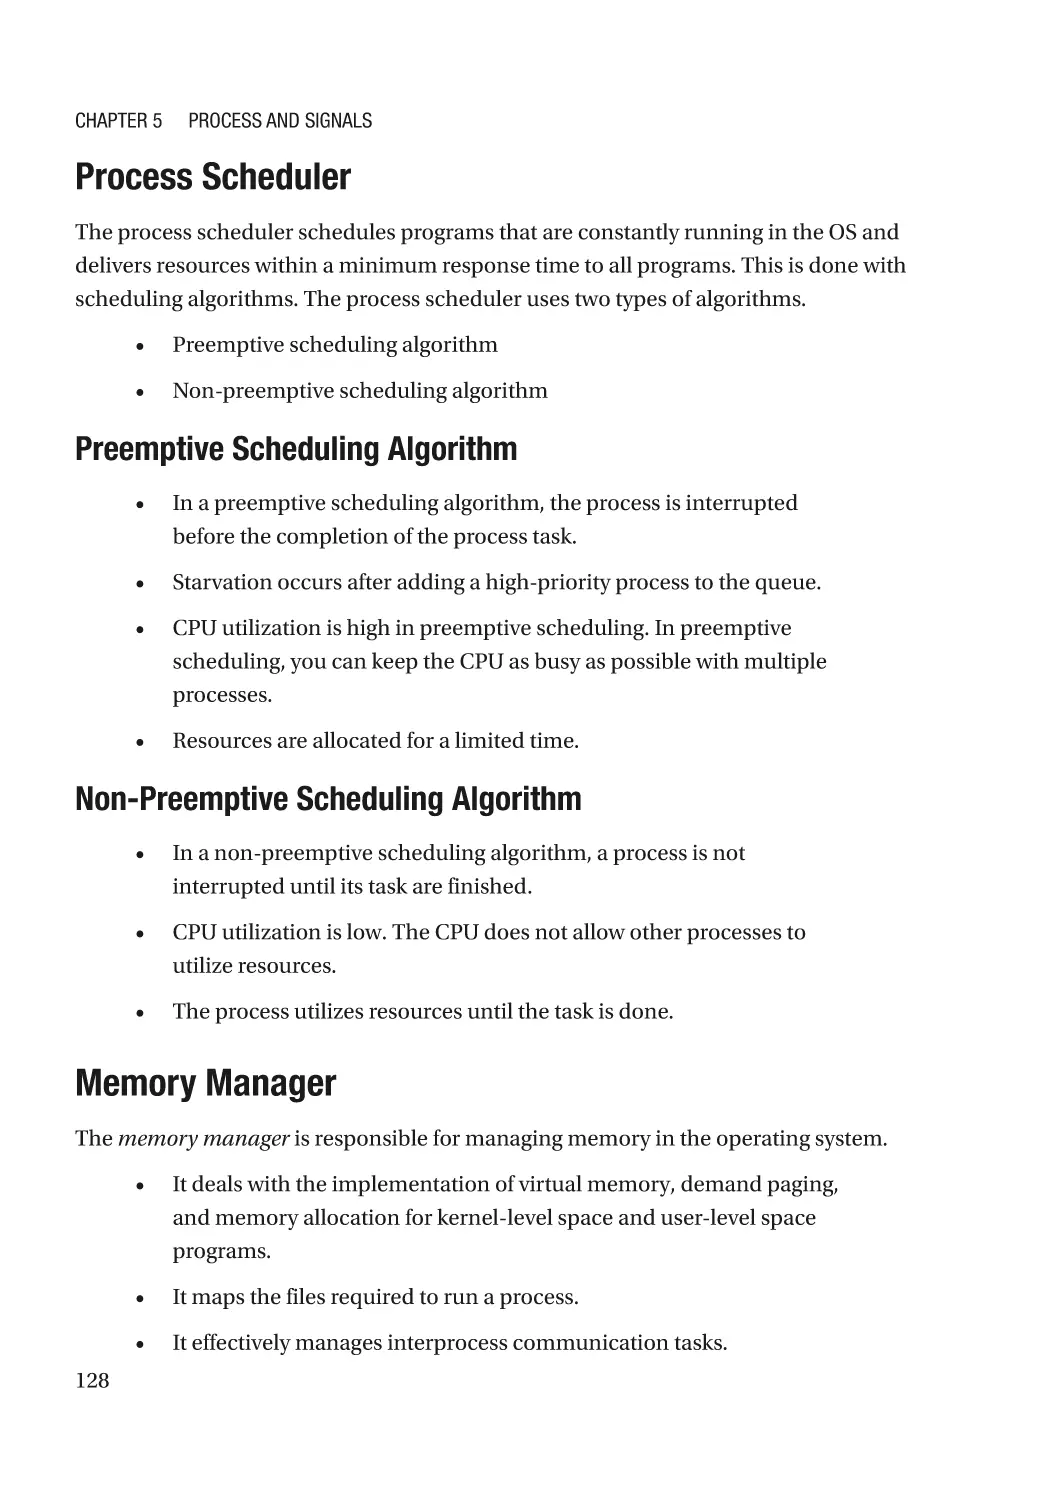 Process Scheduler
Preemptive Scheduling Algorithm
Non-Preemptive Scheduling Algorithm
Memory Manager